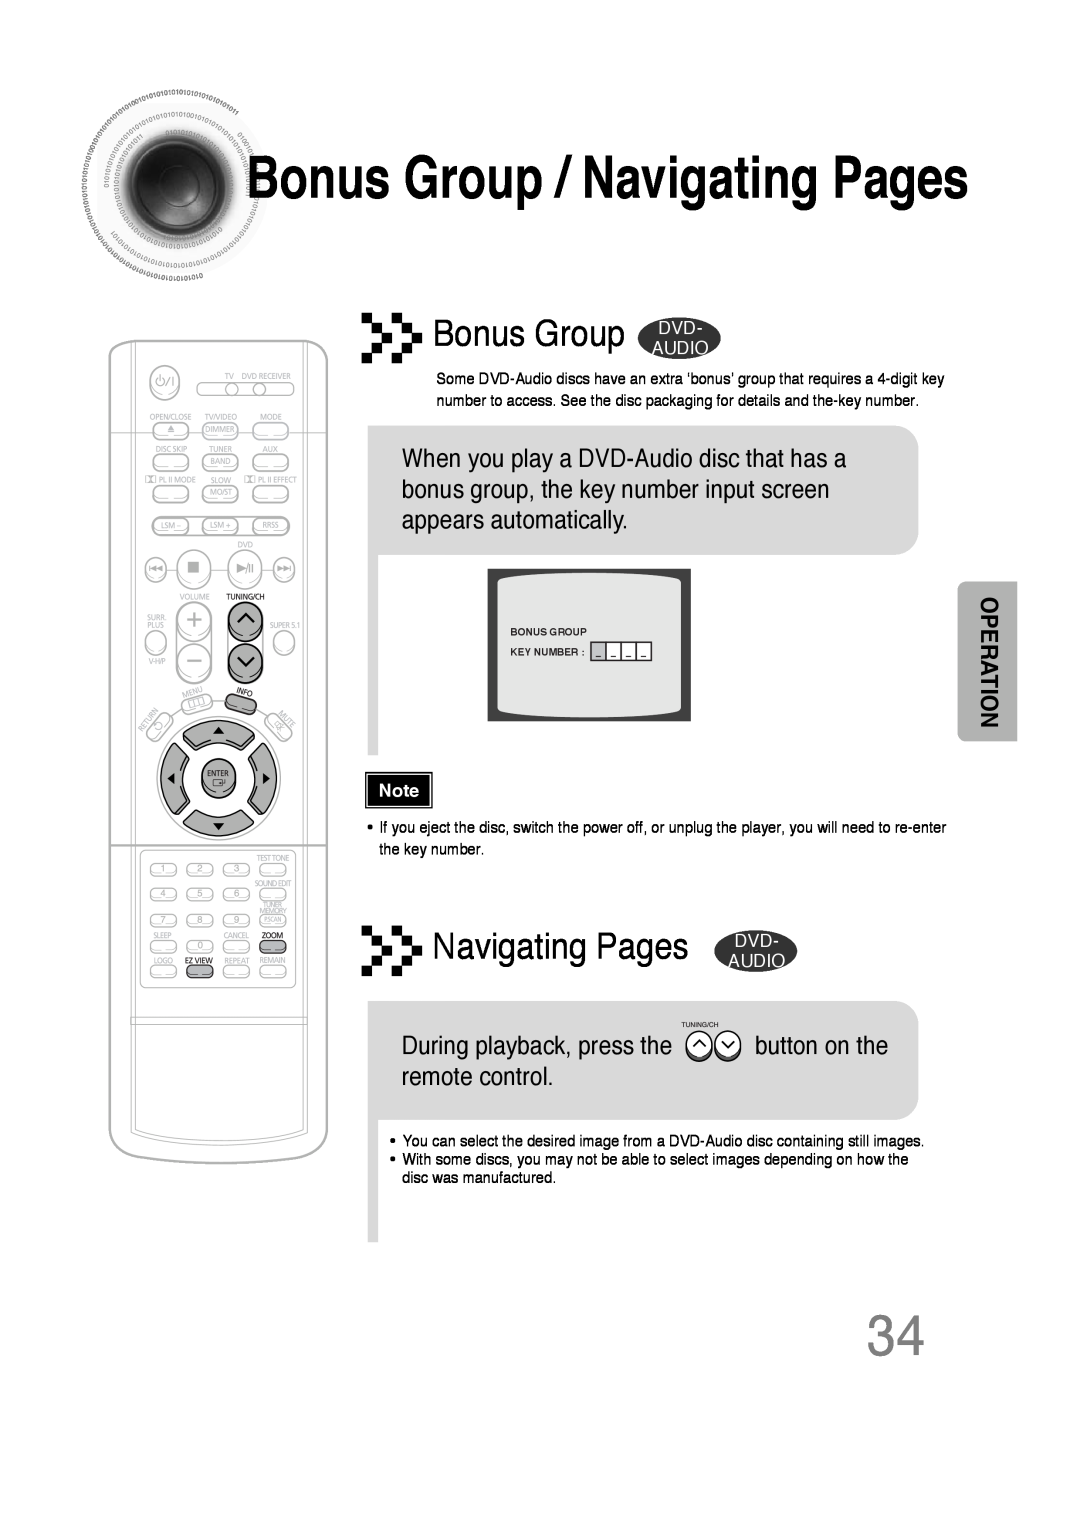 Samsung 20051111103302296 instruction manual BonusGroup / Navigating Pages, Bonus Group DVD, Navigating Pages DVD 